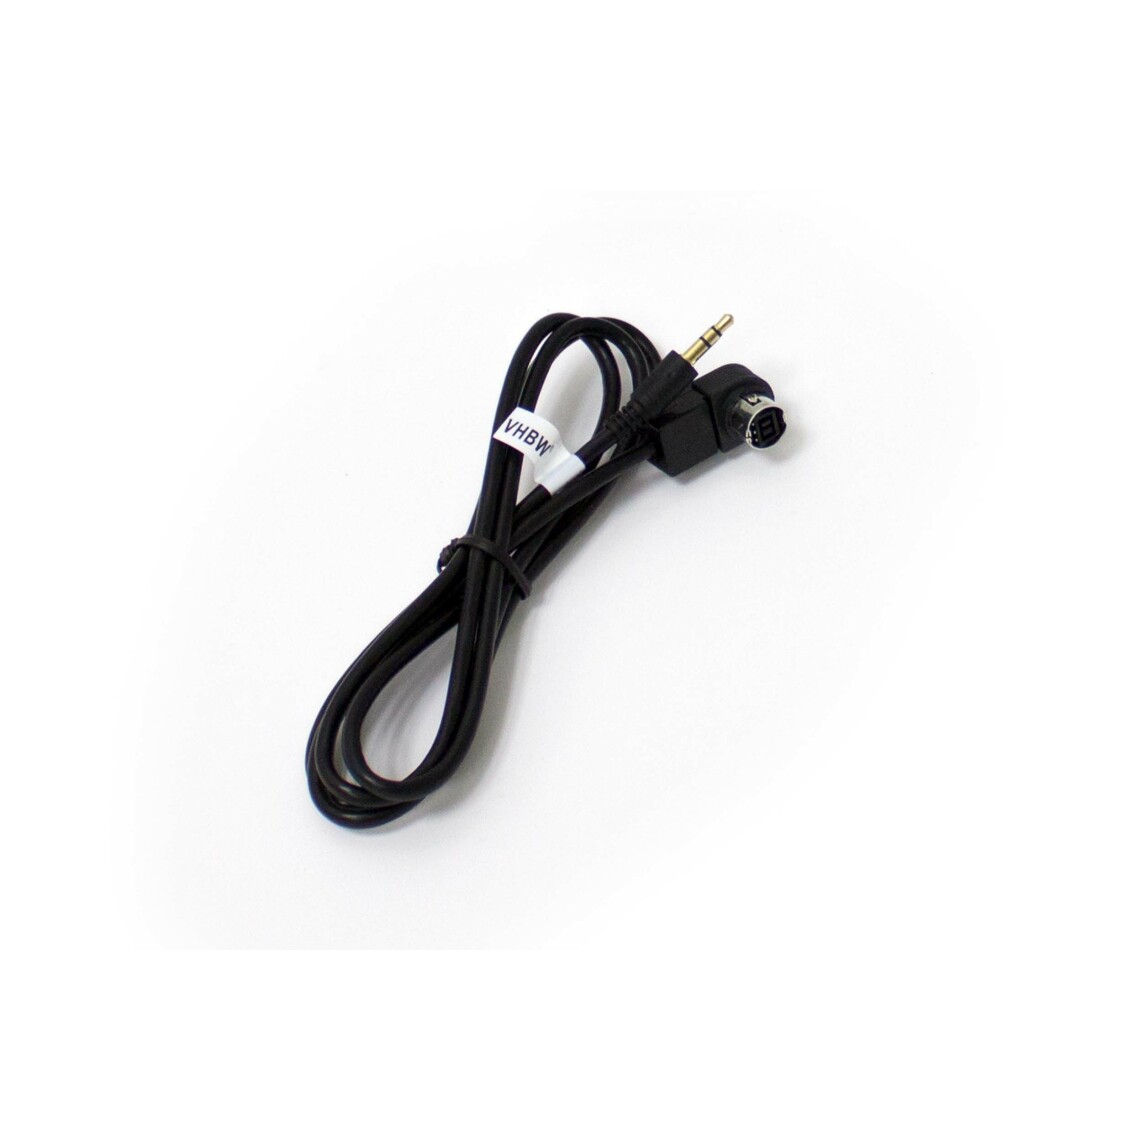 Vhbw - vhbw Câble adaptateur de ligne AUX Radio compatible avec Alpine CDA-9853R, CDA-9854R, CDA-9855R, CDA-9856R, CDA-9857R, CDA-9883R voiture, véhicule - Alimentation modulaire